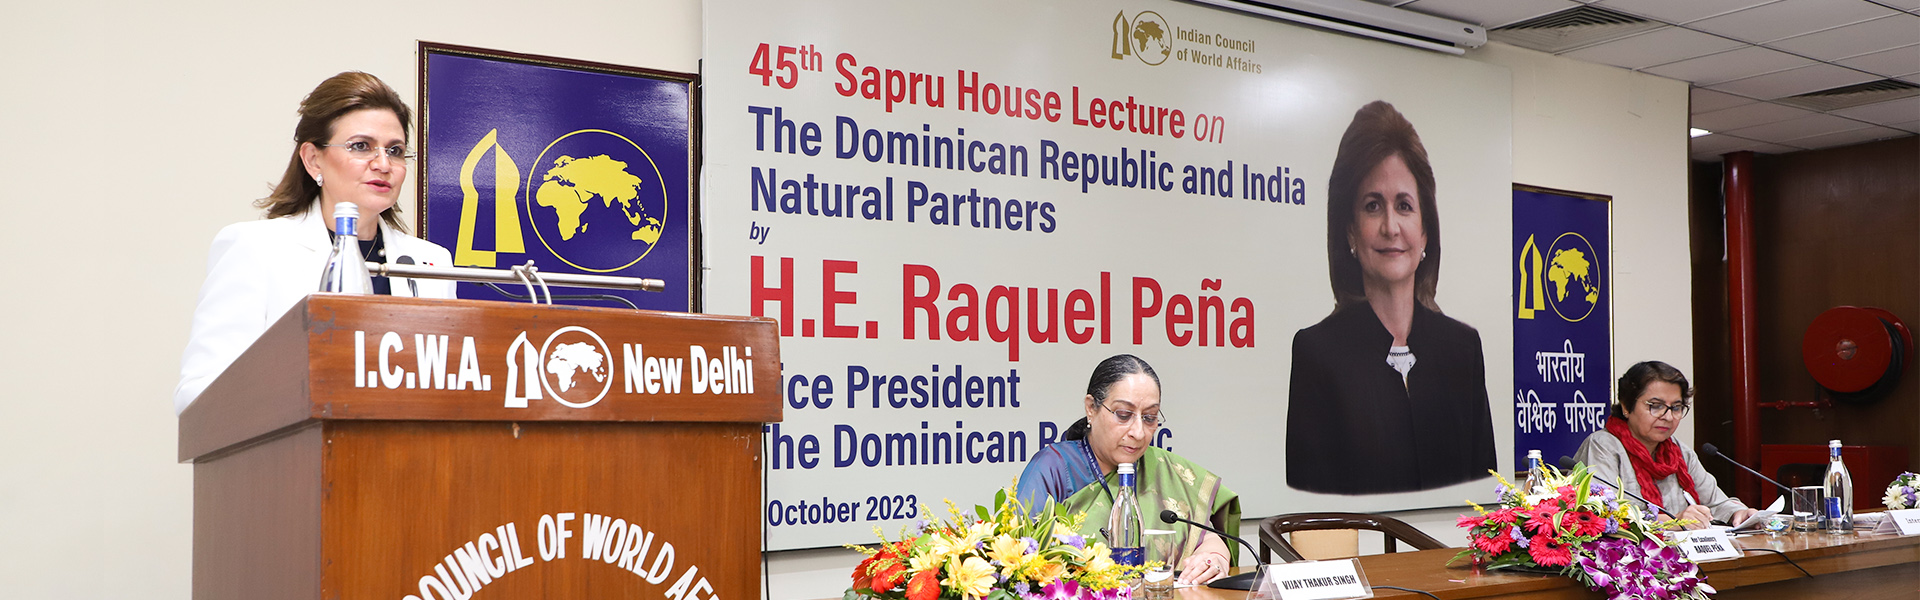 महामहिम राकेल पेना, उपराष्ट्रपति, डोमिनिकन गणराज्य, 4 अक्टूबर 2023 को सप्रू हाउस में 'डोमिनिकन गणराज्य और भारत: प्राकृतिक भागीदार' विषय पर सप्रू हाउस व्याख्यान देते हुए।